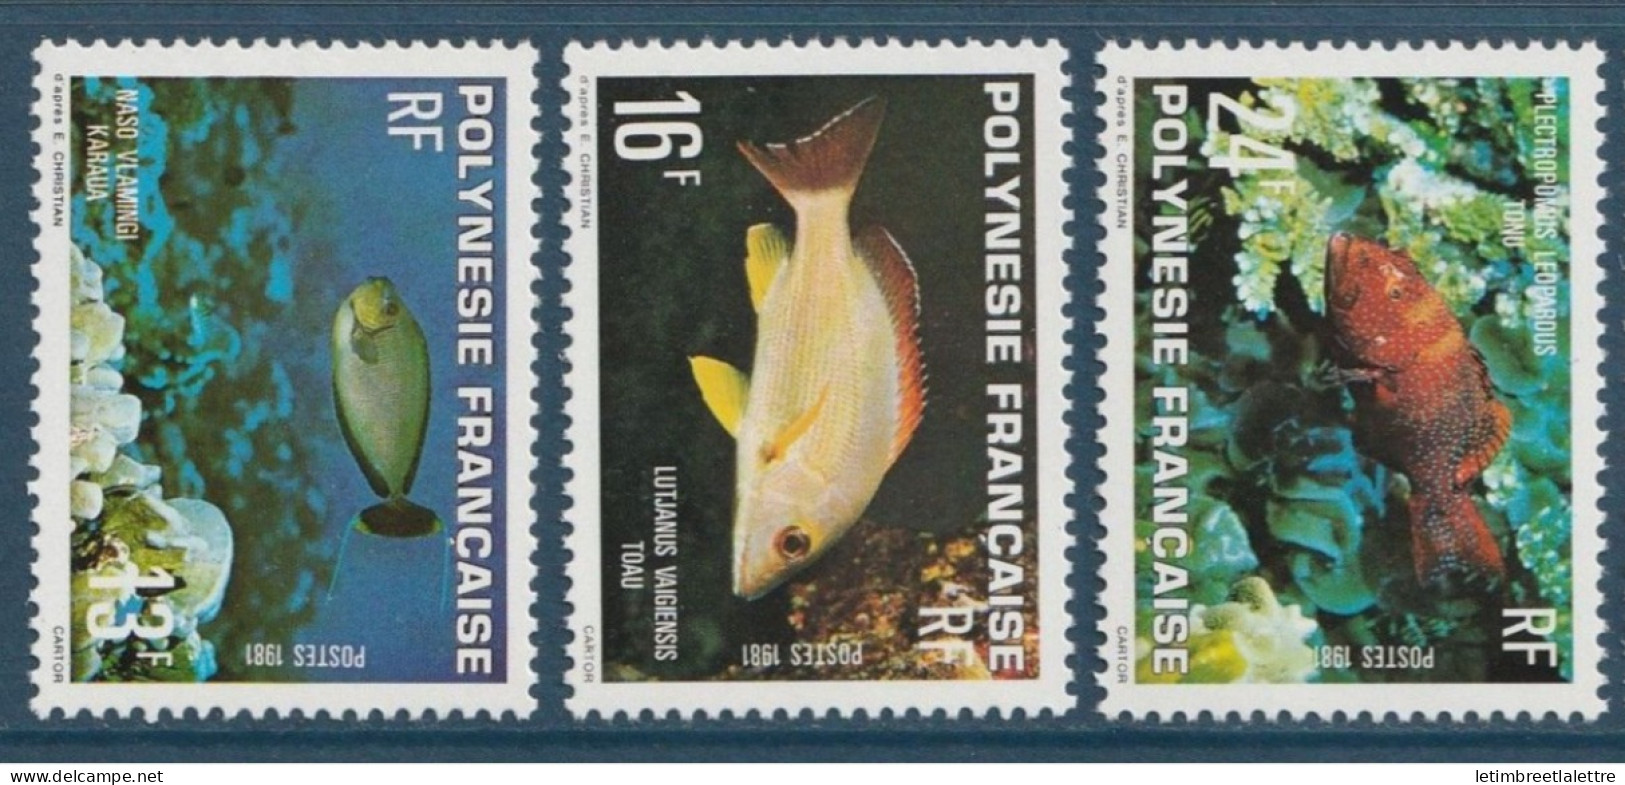 Polynésie Française - YT N° 160 à 162 ** - Neuf Sans Charnière - 1981 - Nuevos